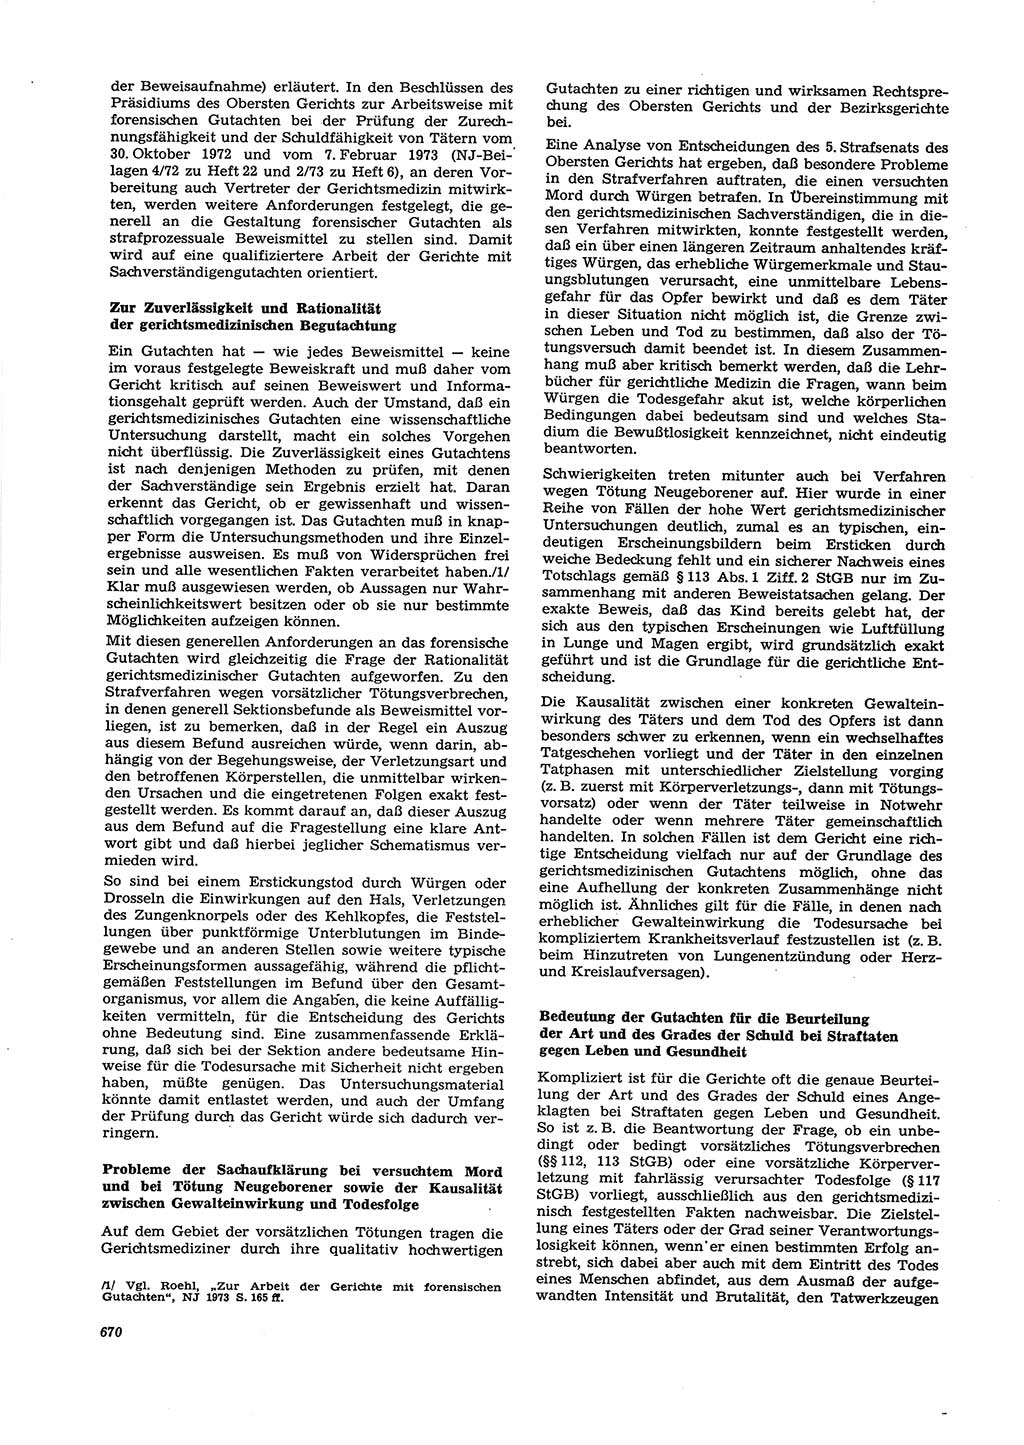 Neue Justiz (NJ), Zeitschrift für Recht und Rechtswissenschaft [Deutsche Demokratische Republik (DDR)], 27. Jahrgang 1973, Seite 670 (NJ DDR 1973, S. 670)